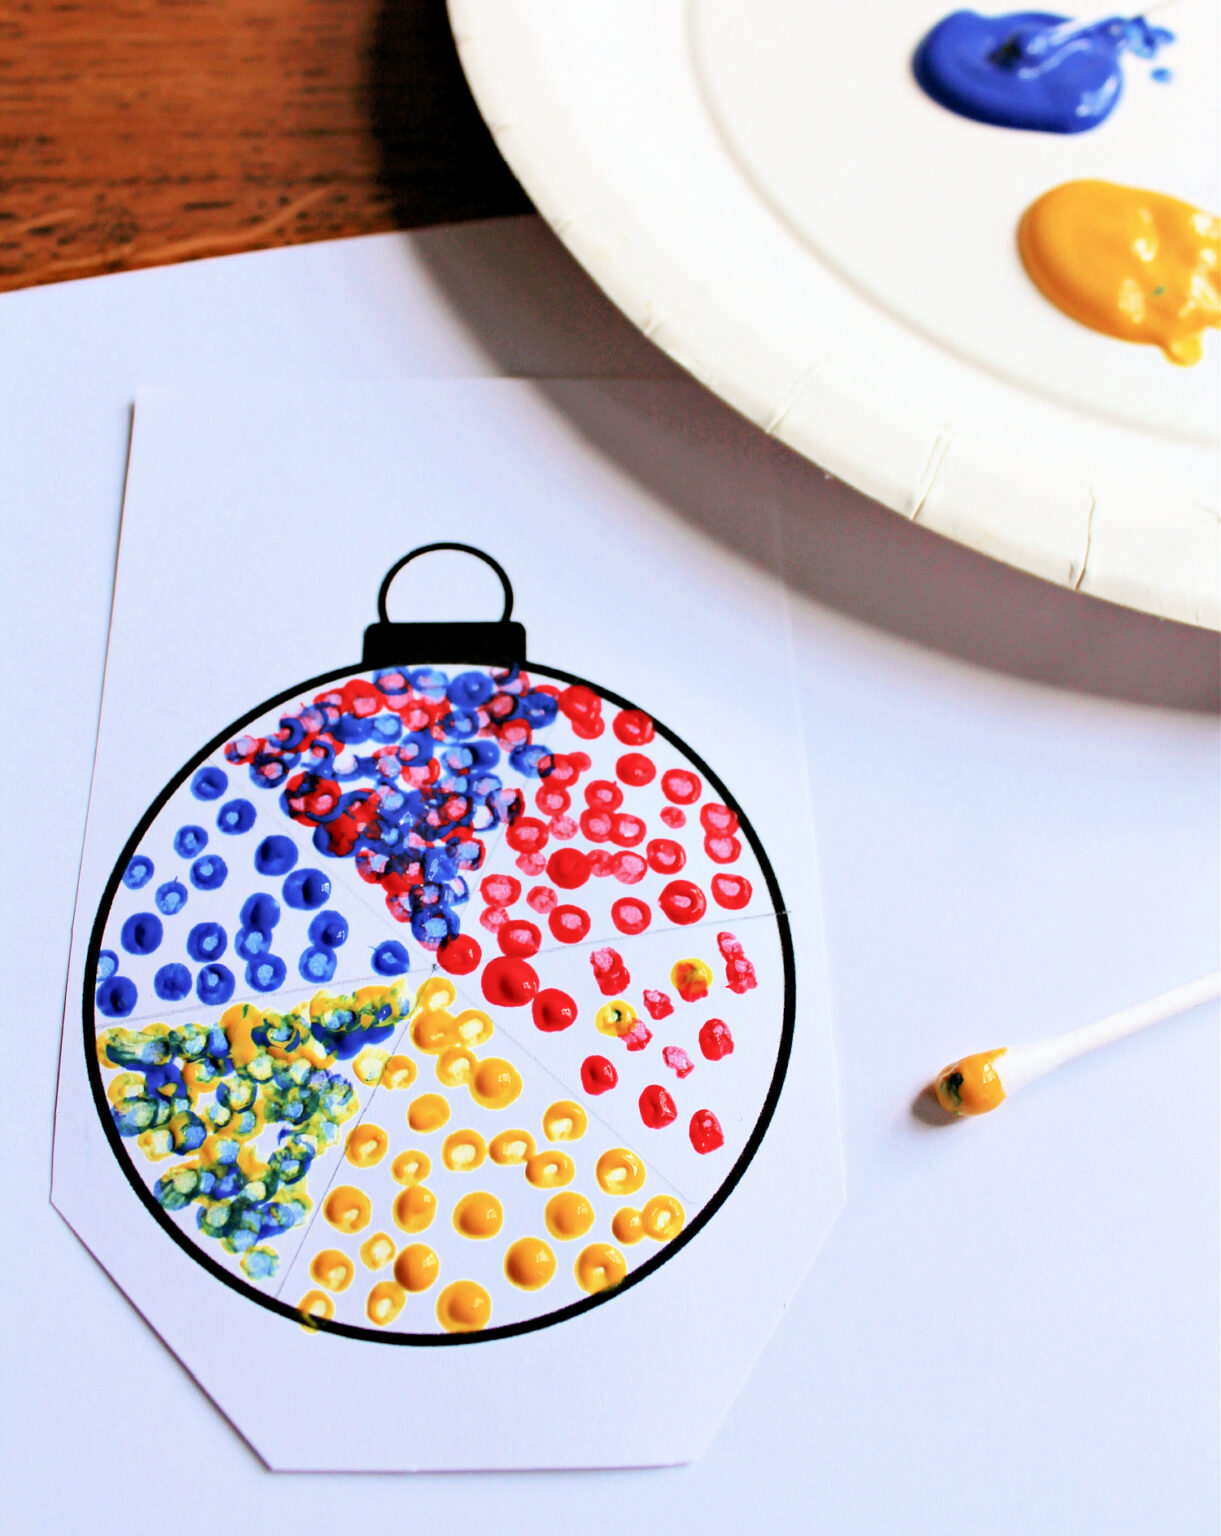 Seurat pointillism art lesson for children - NurtureStore